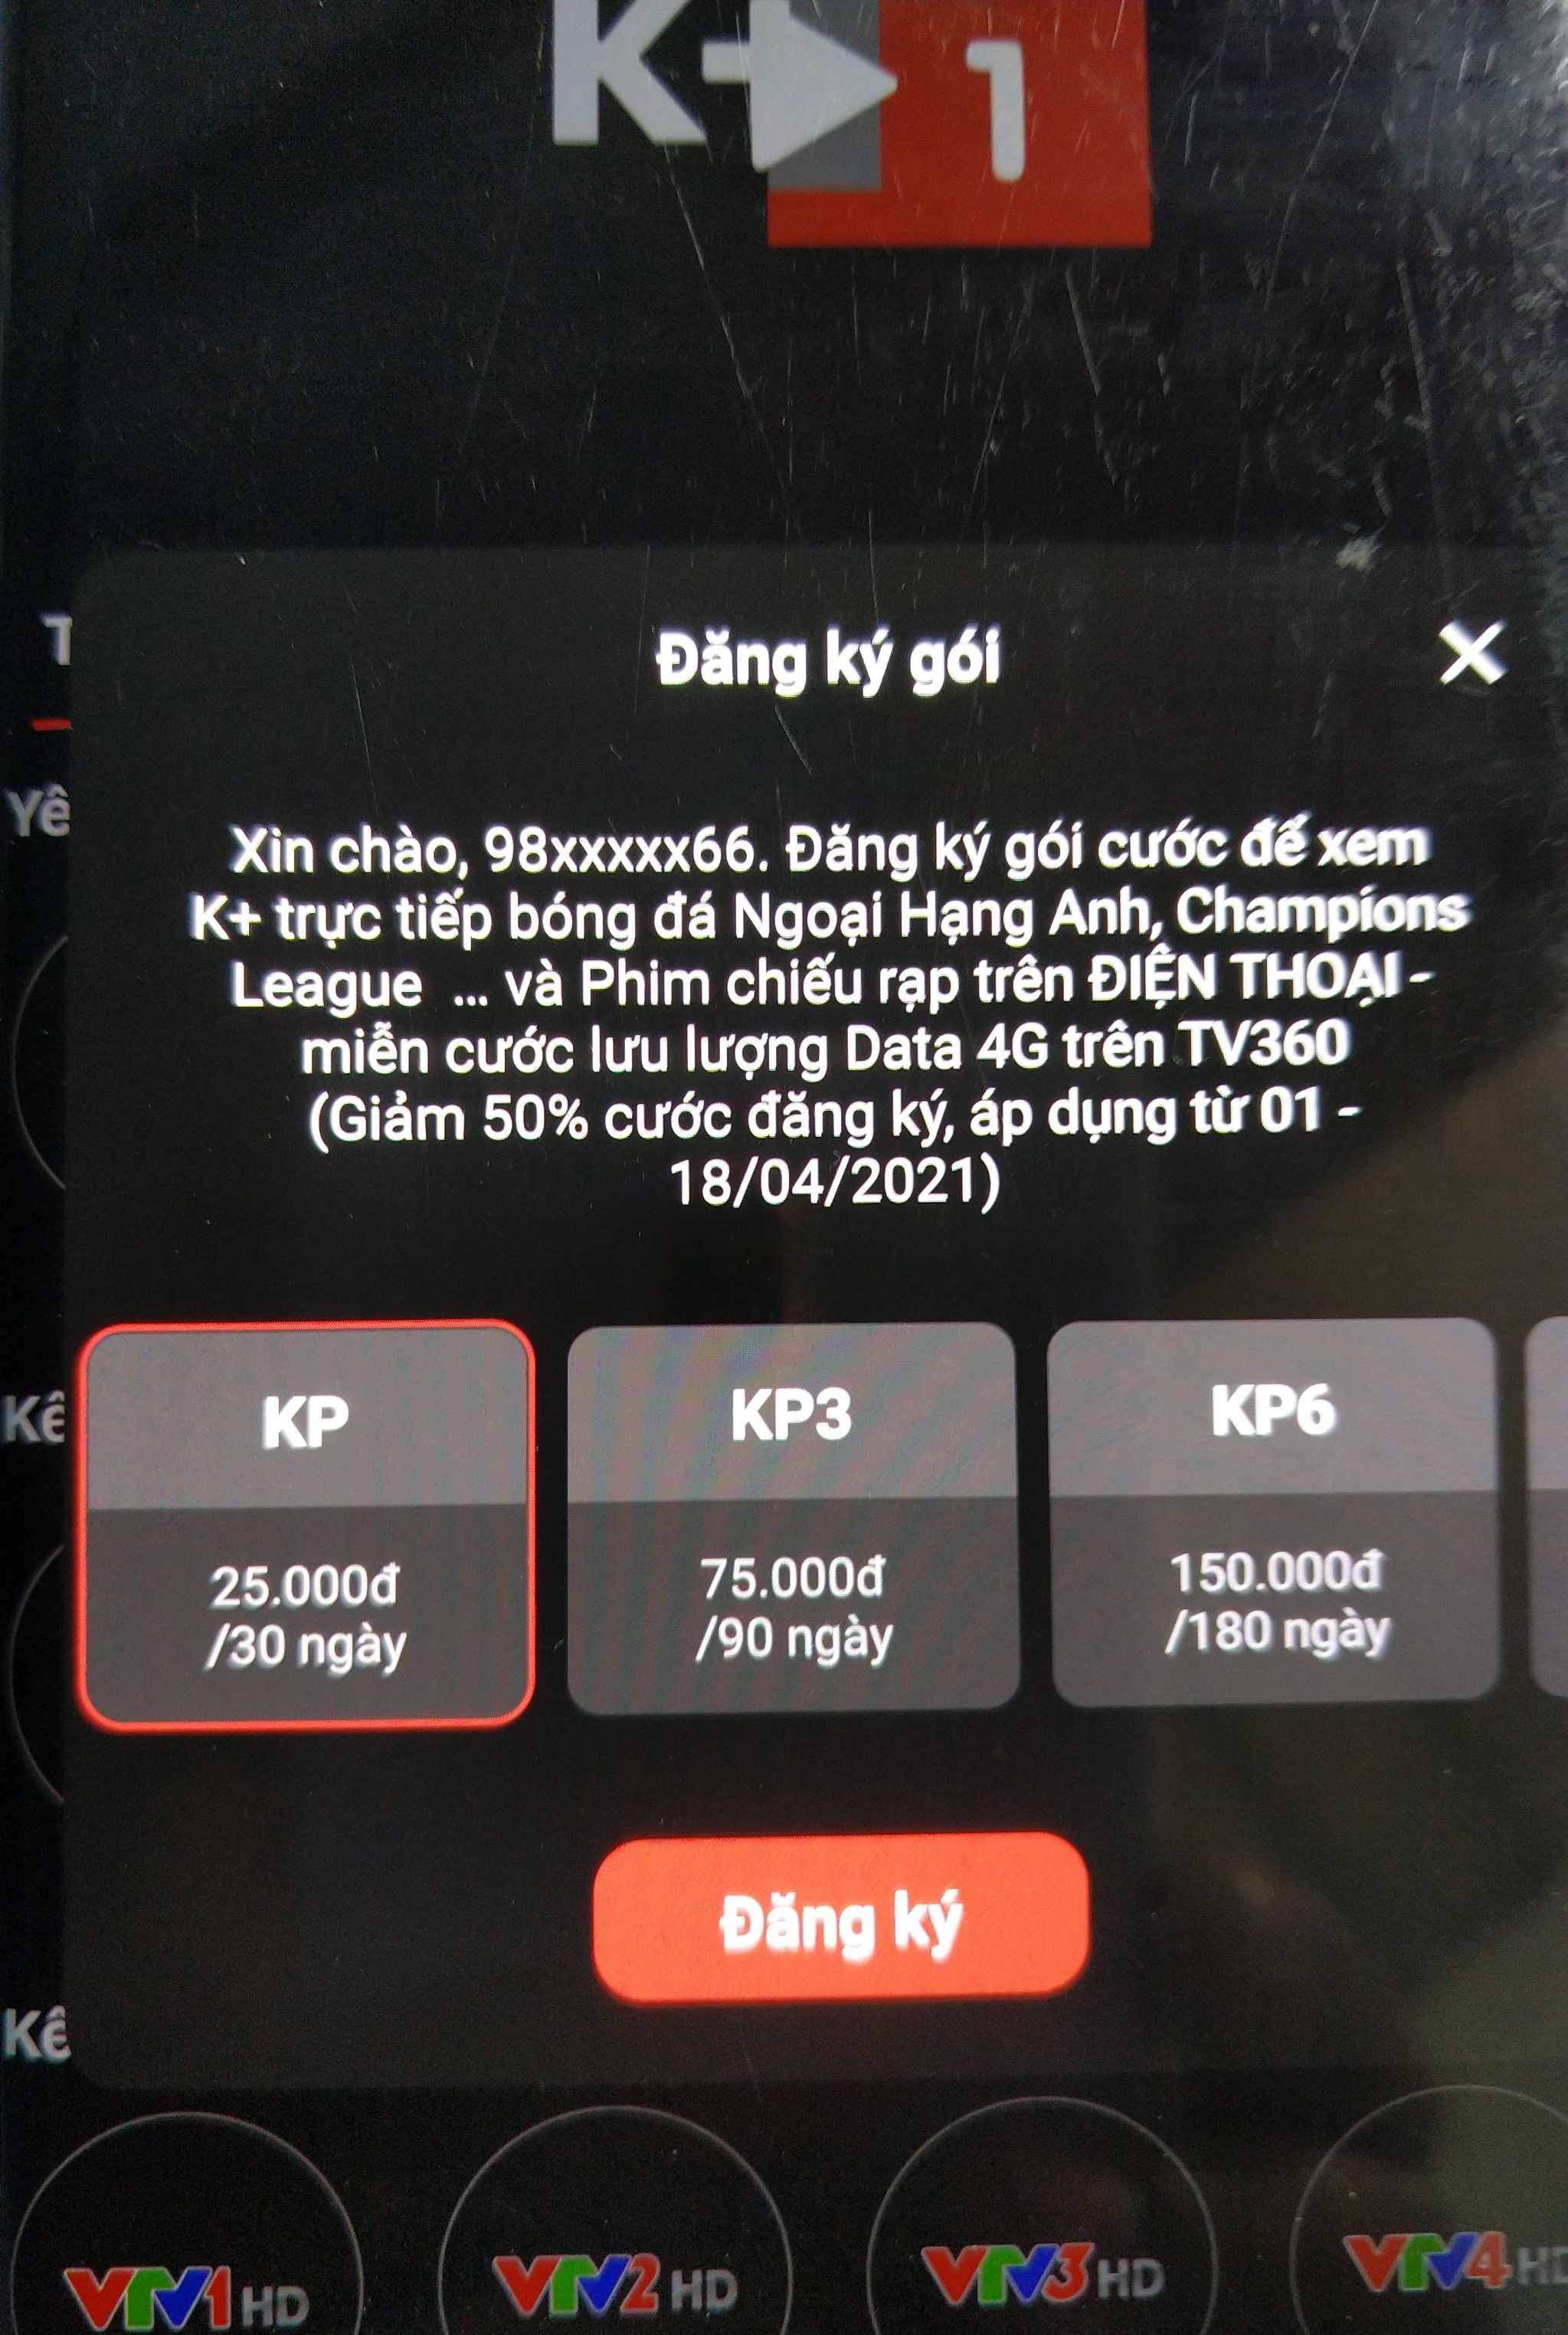 App TV360 của Viettel sau thời gian cho dùng K+ miễn phí thì nay đòi tiền rồi đây